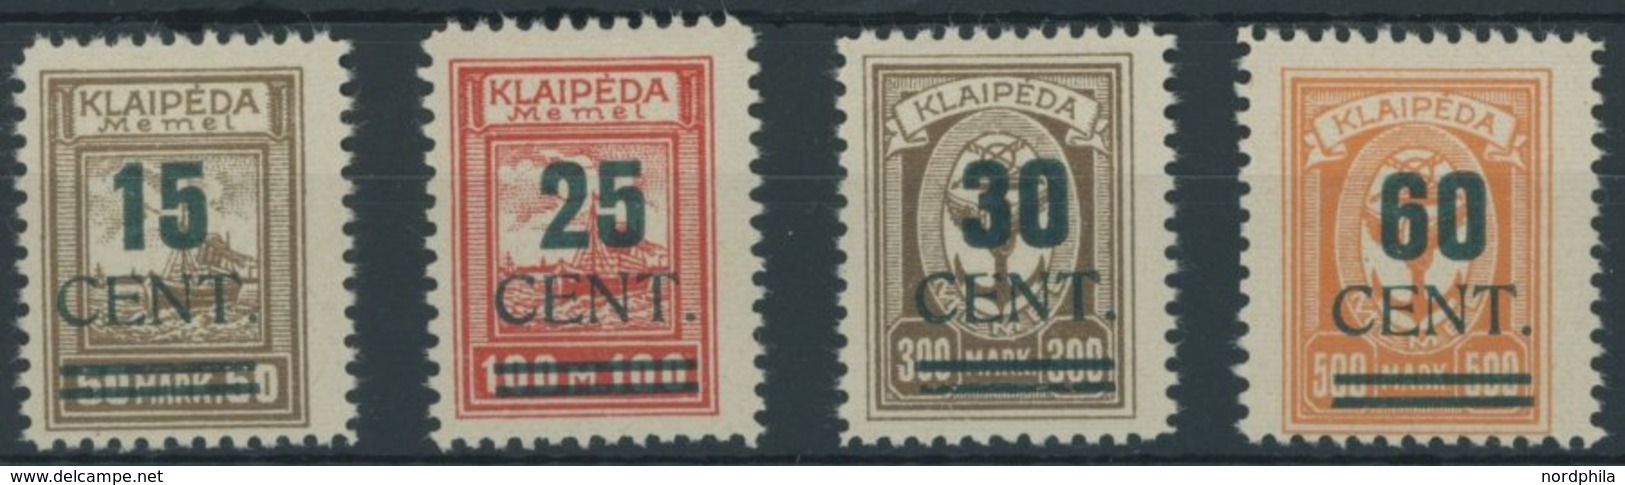 MEMELGEBIET 234-37I *, 1923, 15 - 60 C. Memelland, Type I, Falzrest, Prachtsatz, Mi. 750.- - Klaipeda 1923